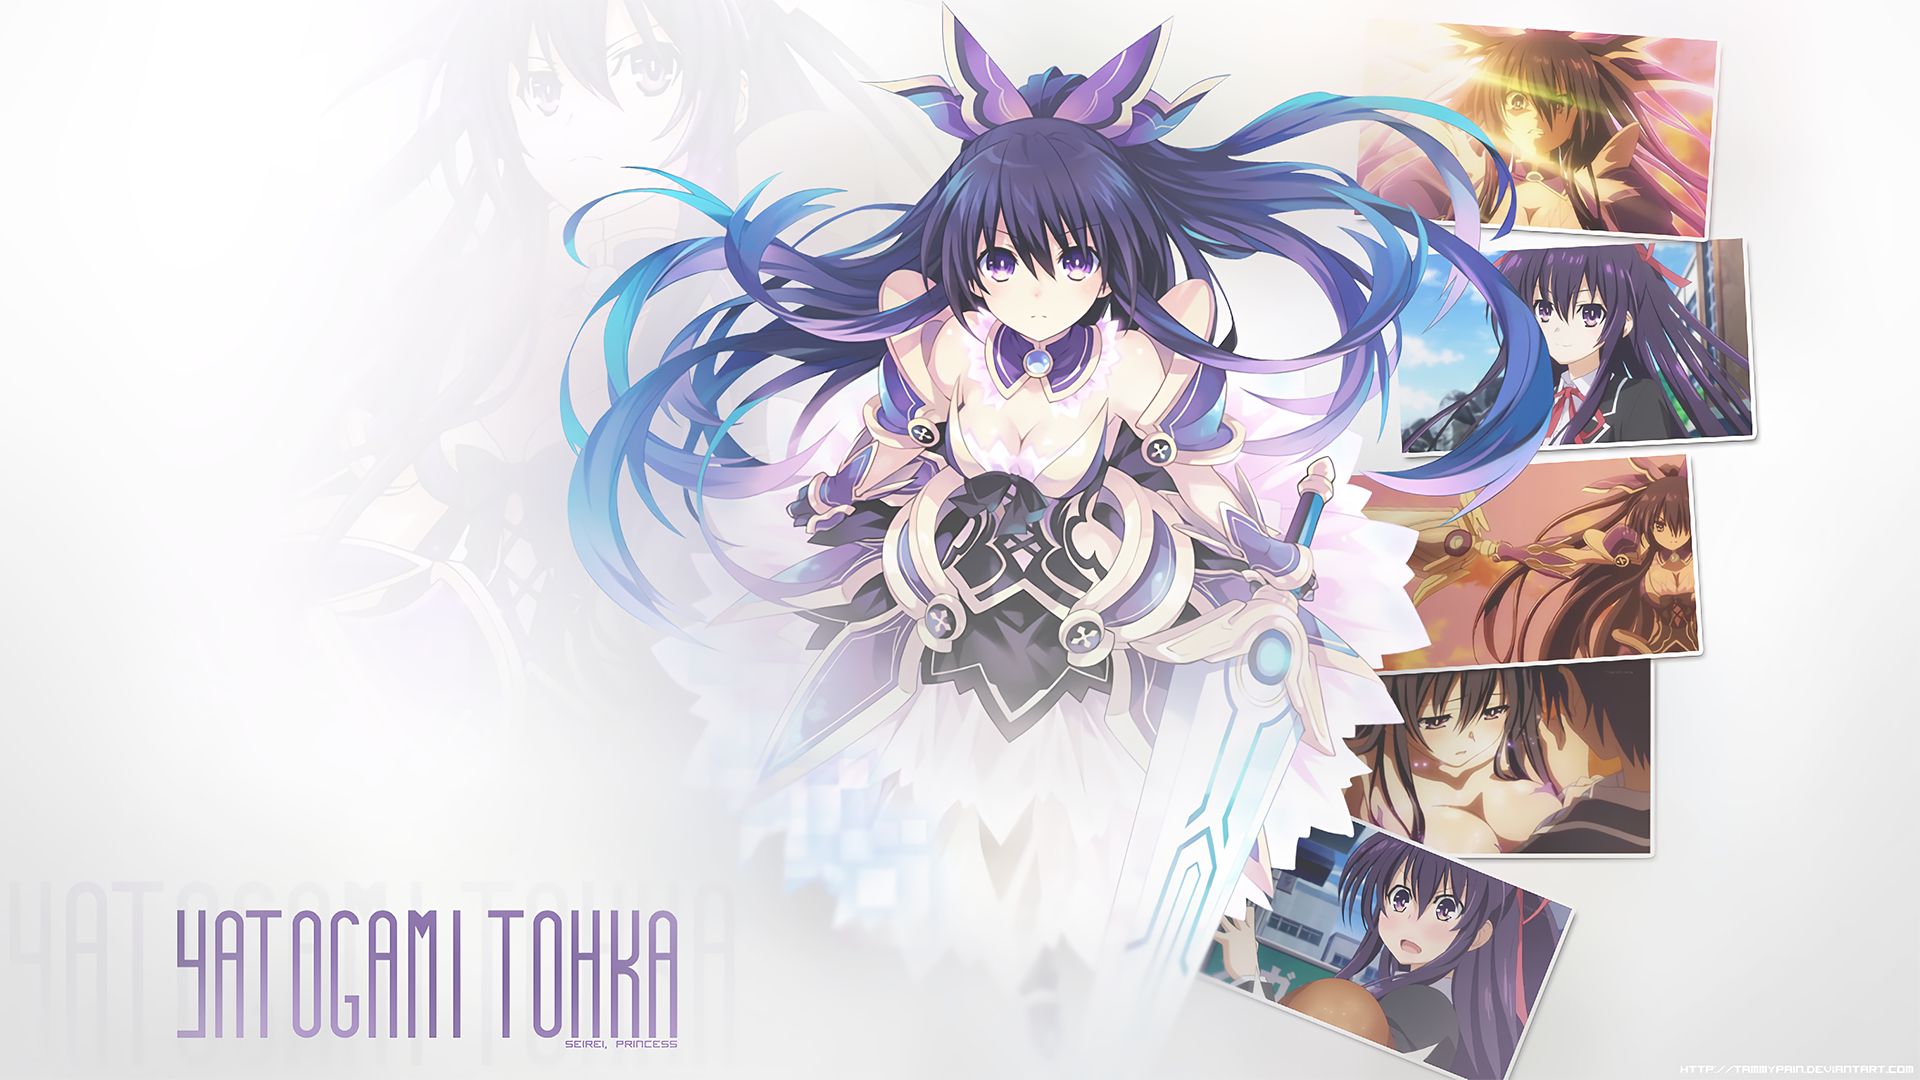 Laden Sie das Animes, Datum A Live, Tohka Yatogami-Bild kostenlos auf Ihren PC-Desktop herunter